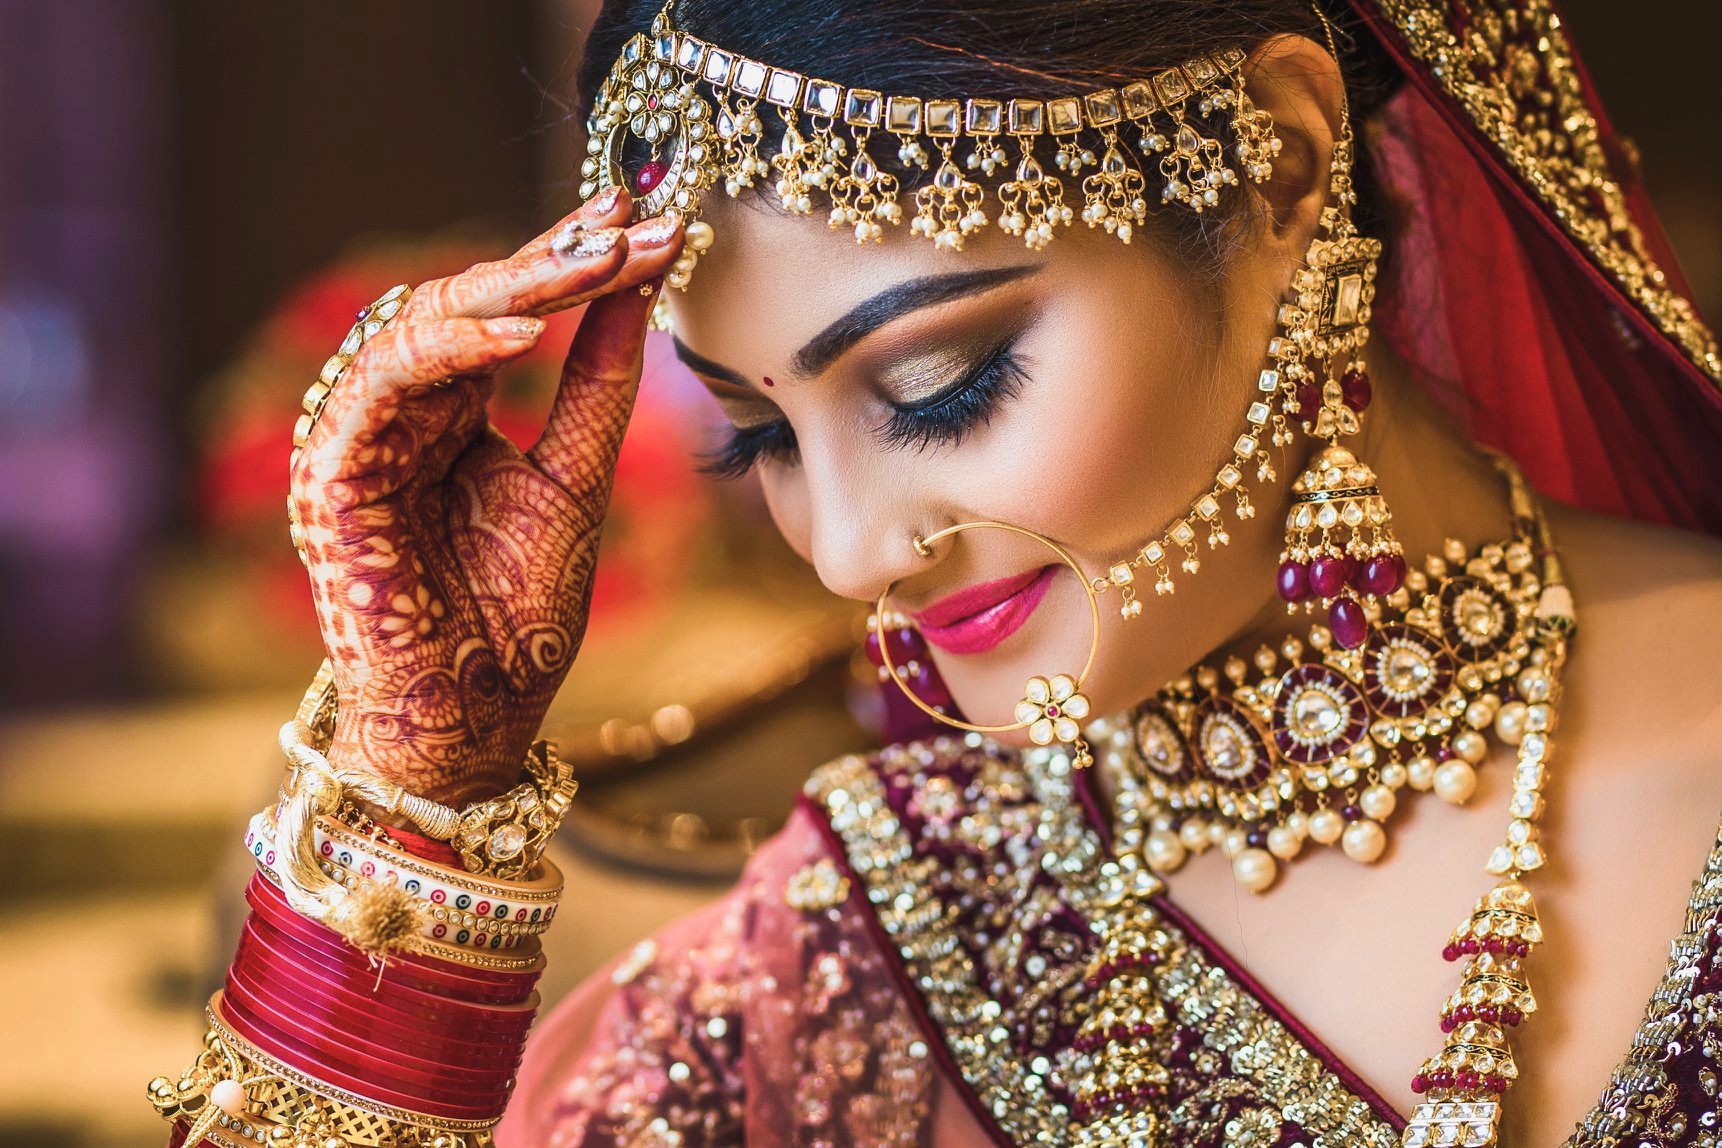 600+ Free Indian Bride & Bride Images - Pixabay